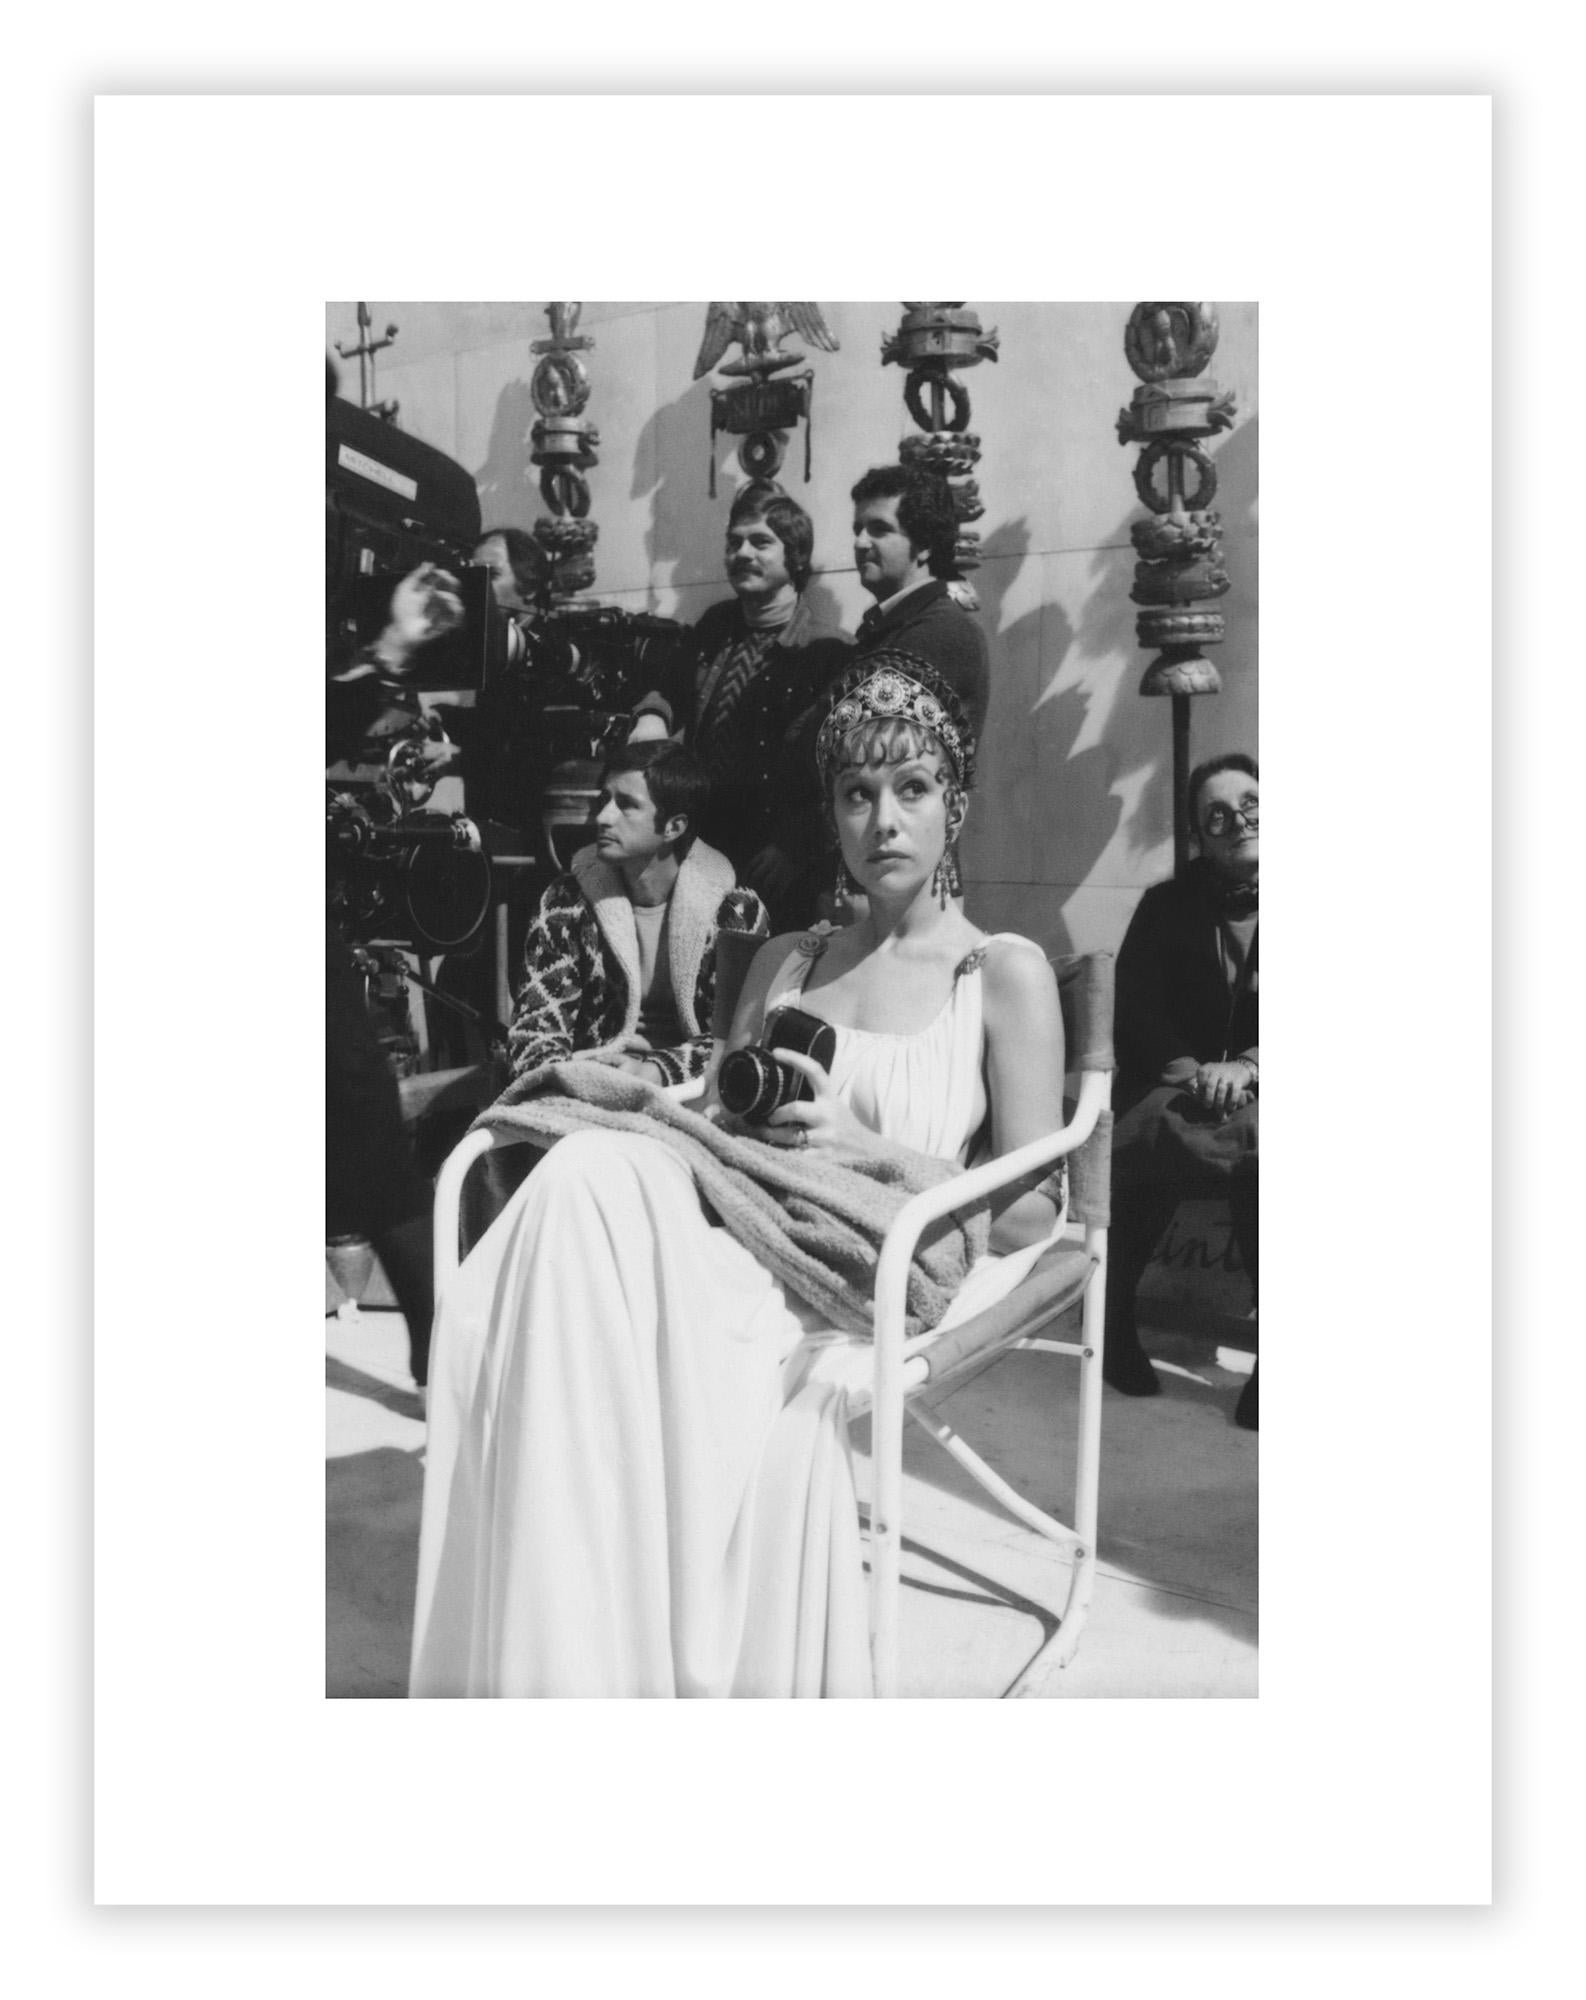 Century Guild présente une sélection de photographies inédites prises sur le tournage de Caligula en 1976 par le légendaire photographe italien Mario Tursi, surtout connu pour son travail avec les réalisateurs italiens Pier Paolo Pasolini et Luchino